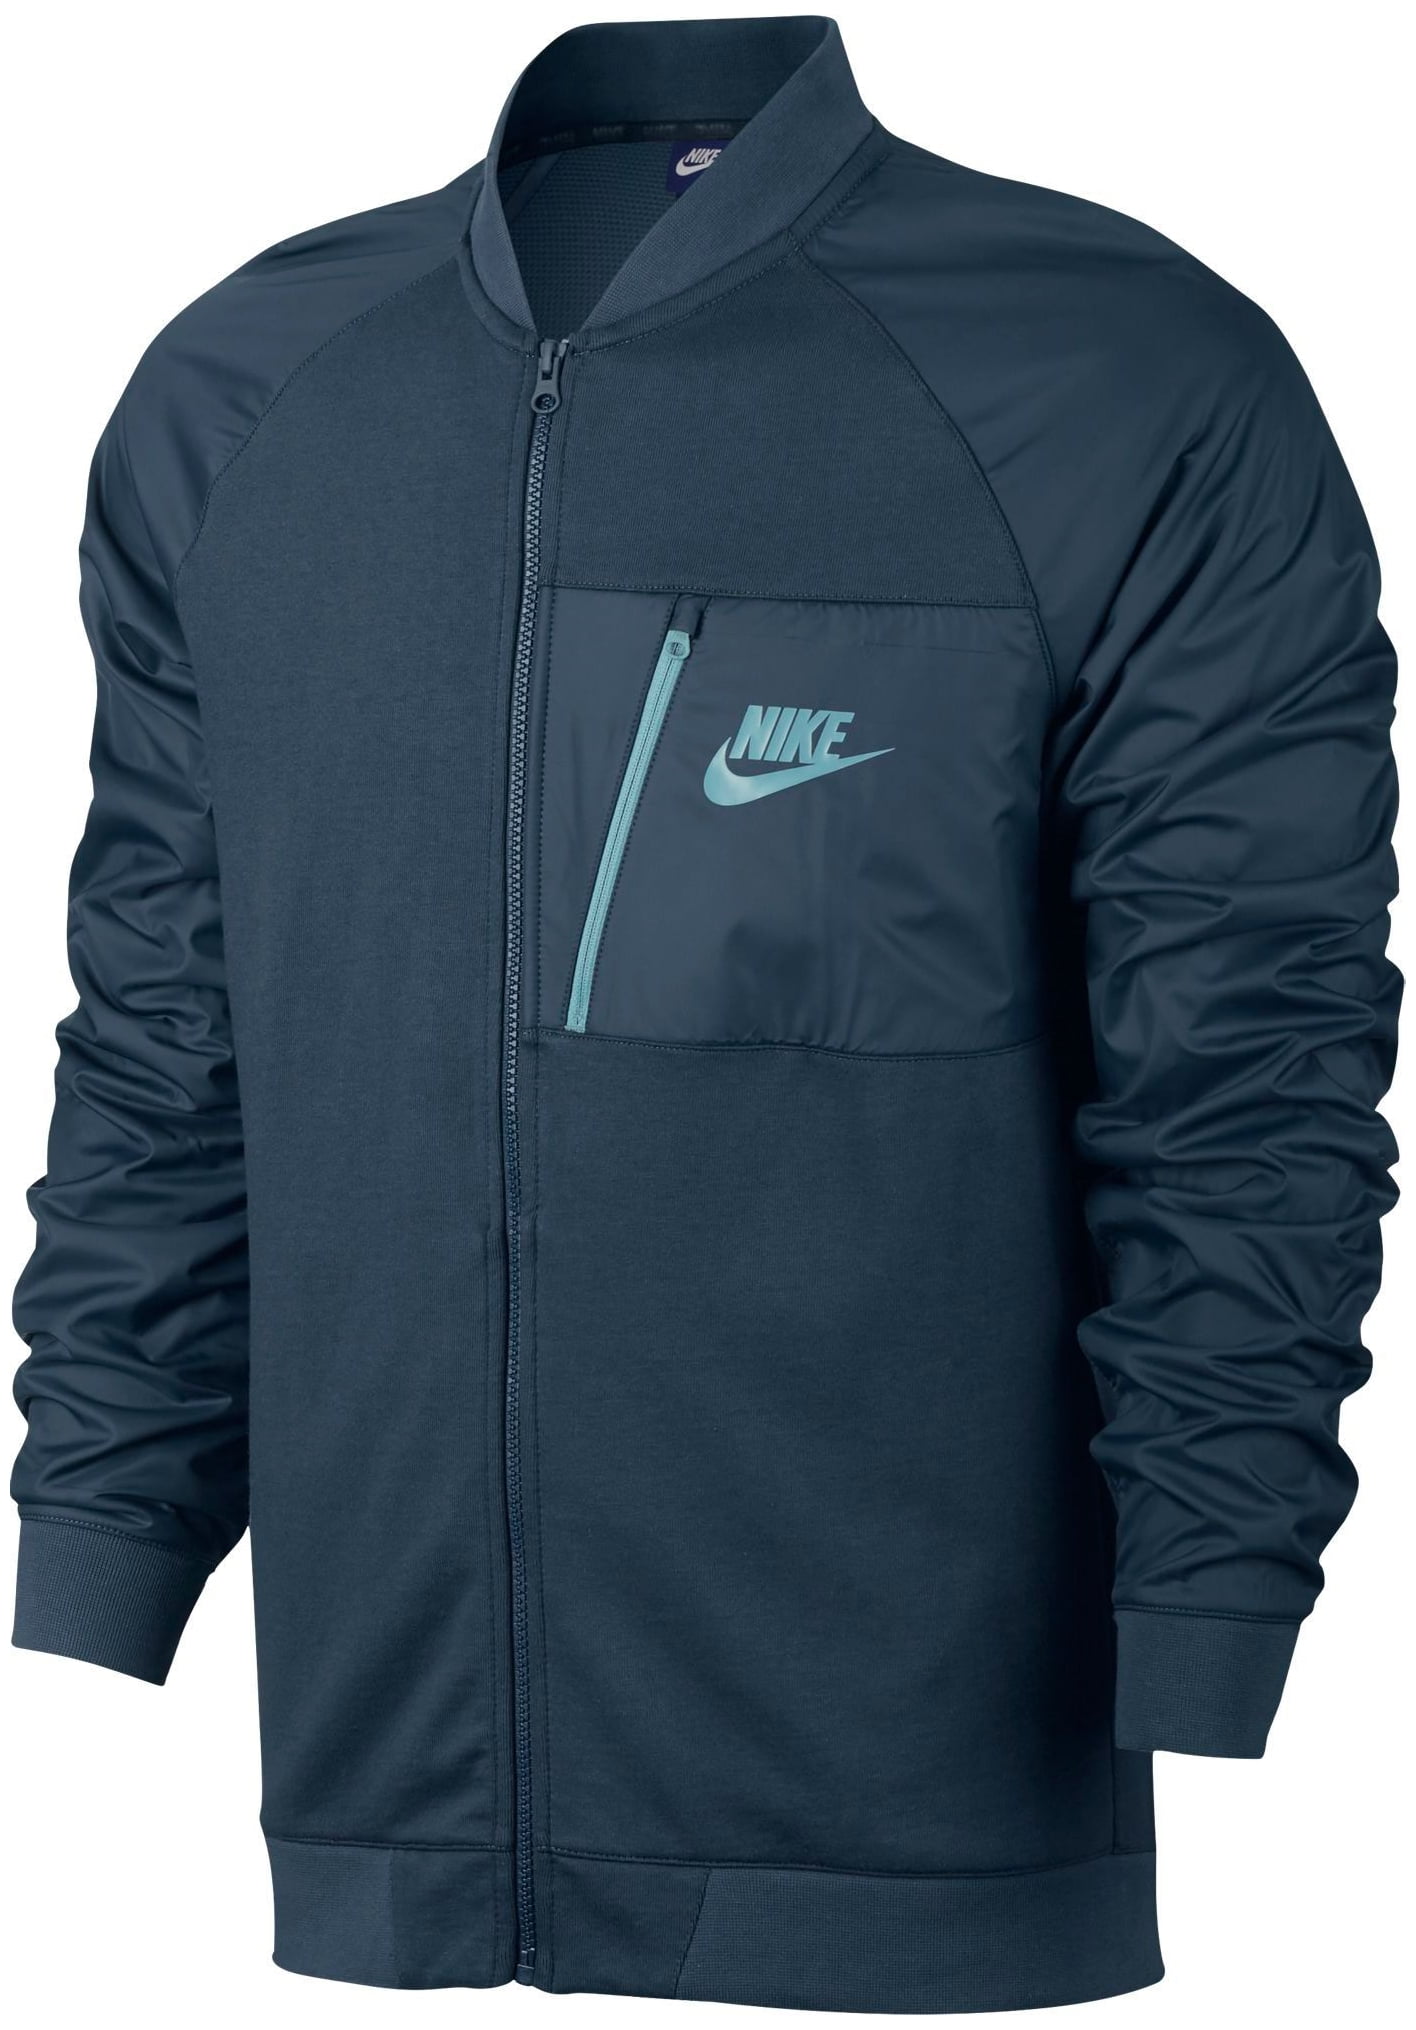 Nike Sportswear Advance 15 Fleece Squadron Blue Full-Zip Jacket Size M ...